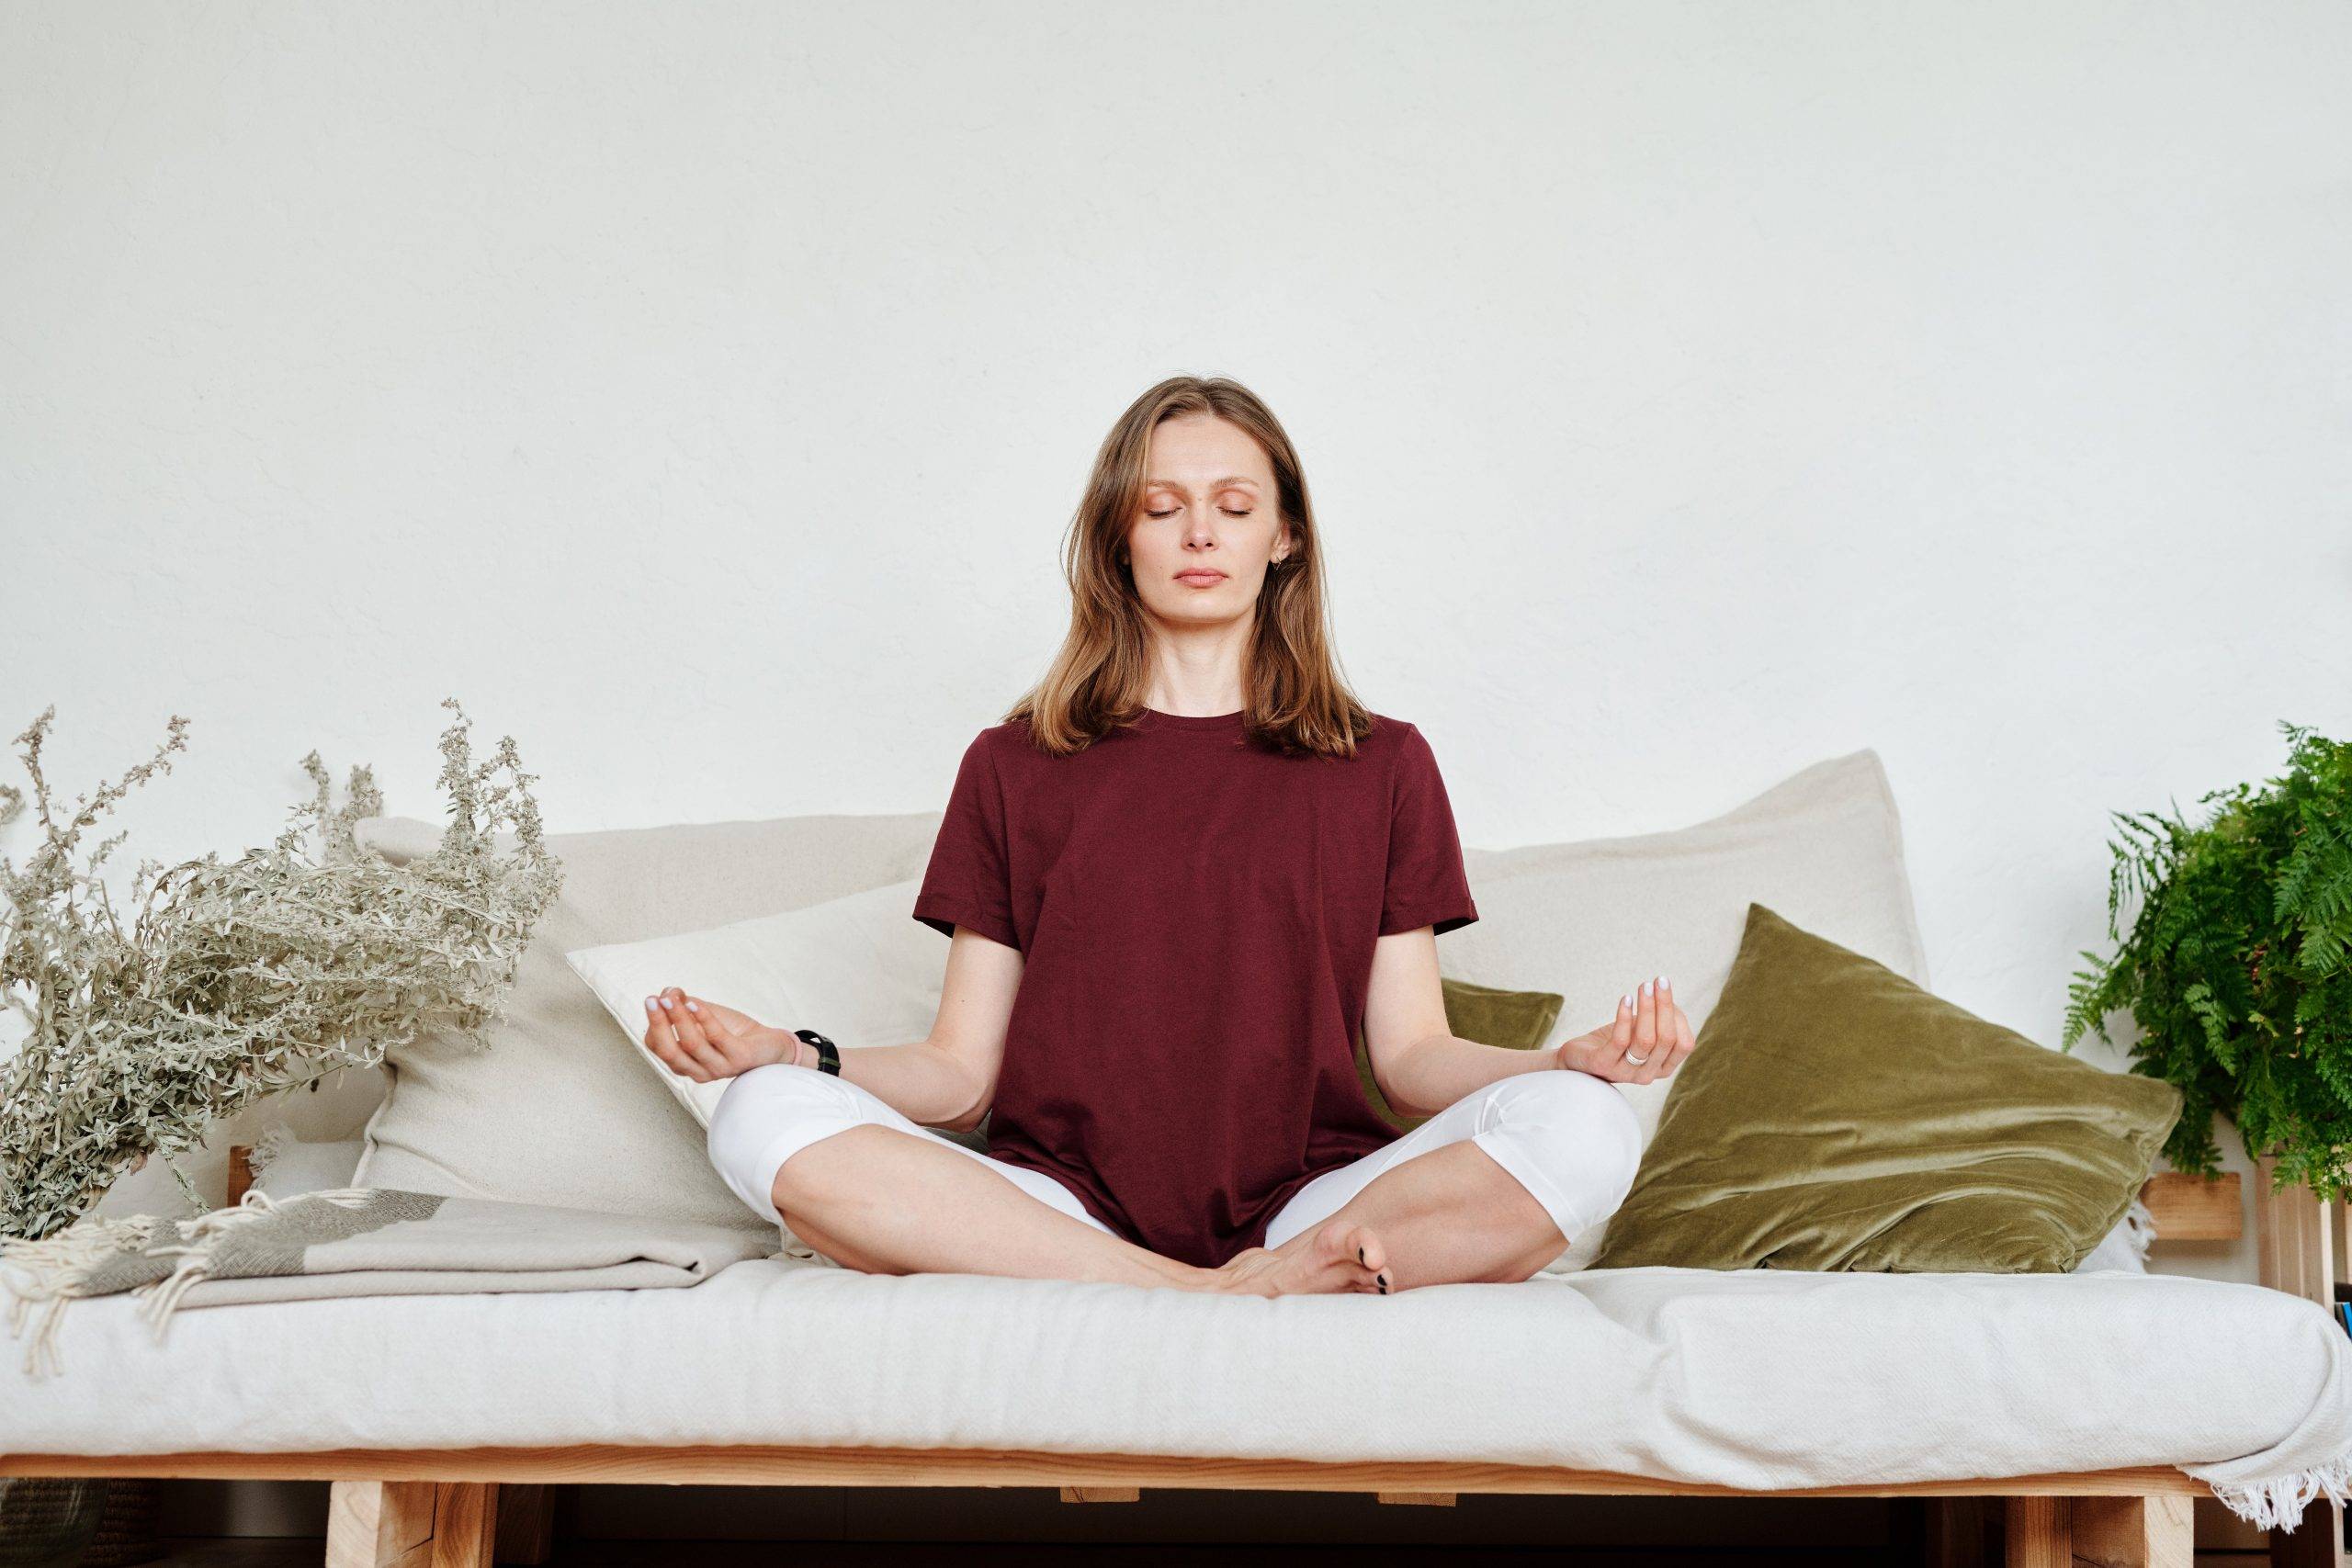 comment la méditation affecte t elle le corps